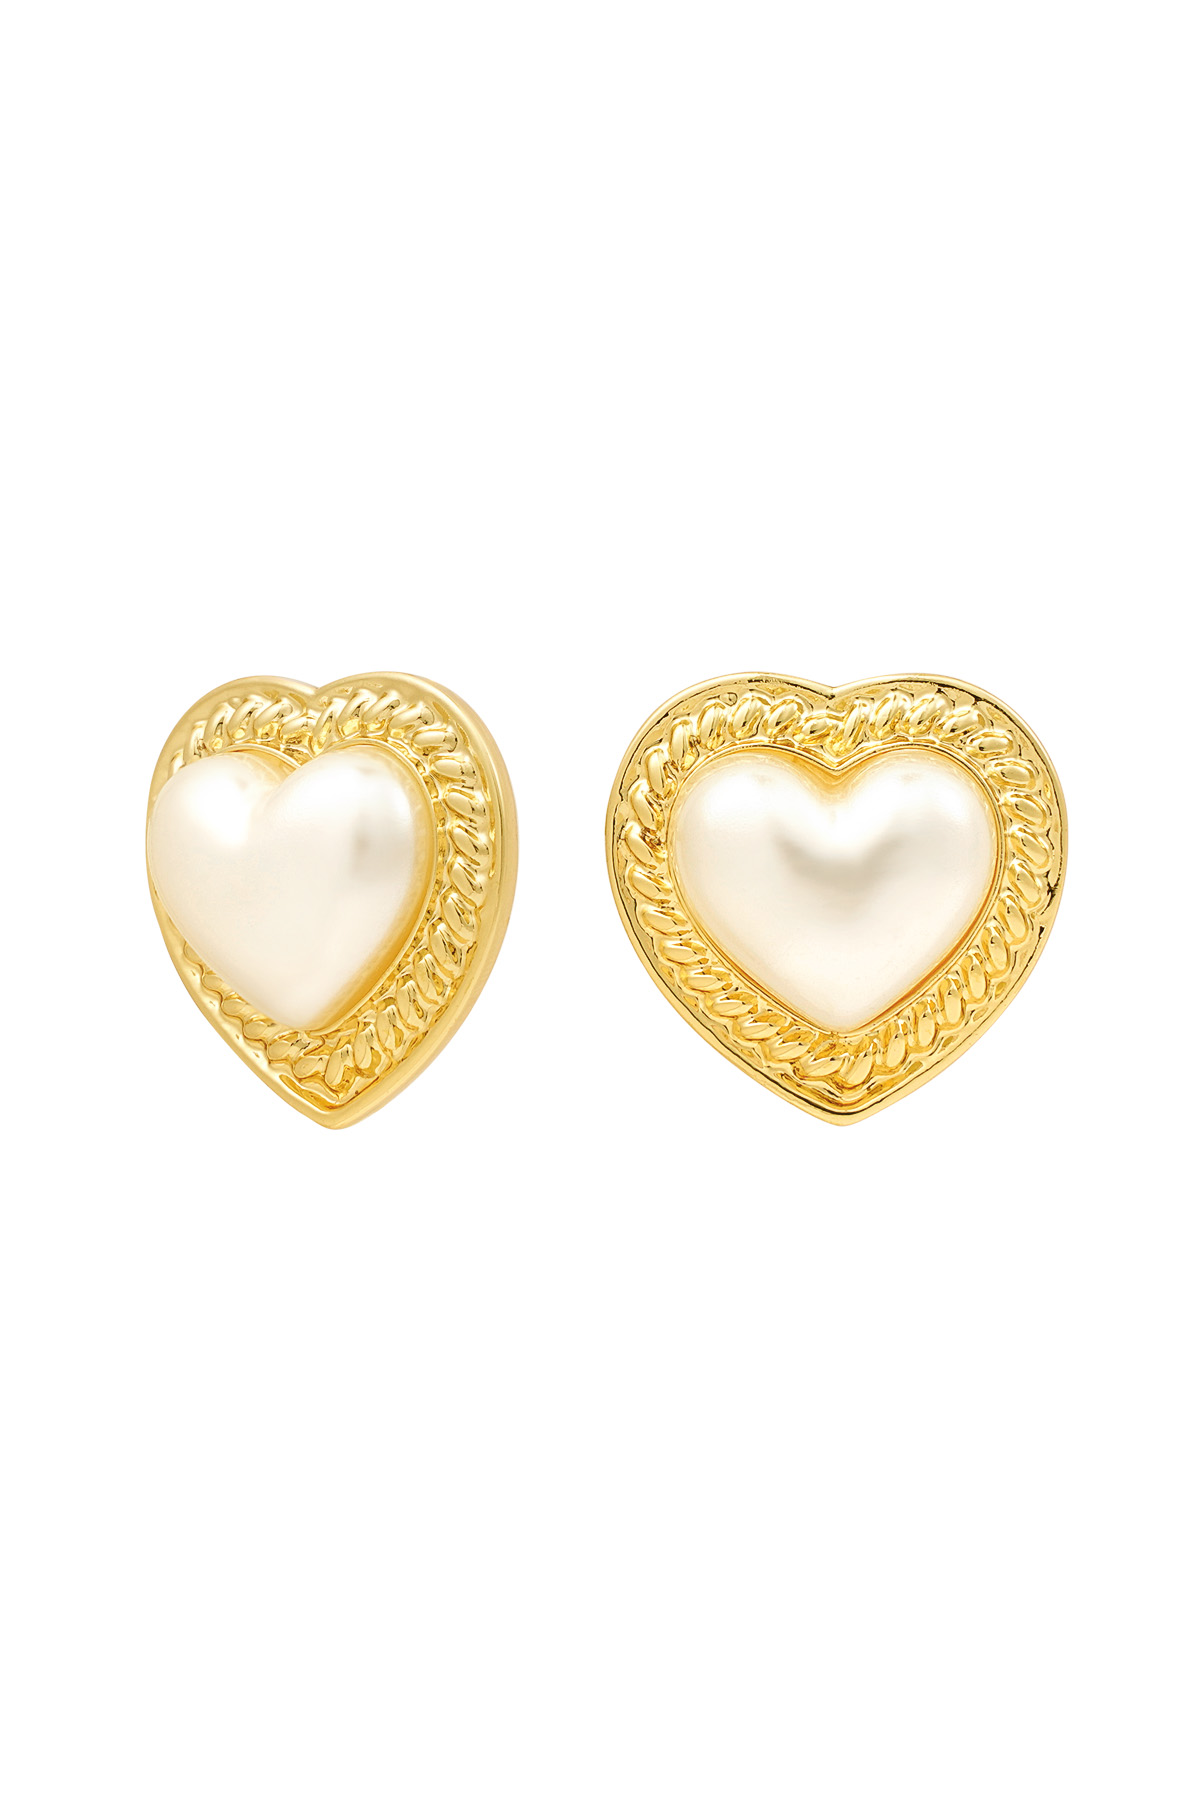 Earrings heart pearl - gold h5 